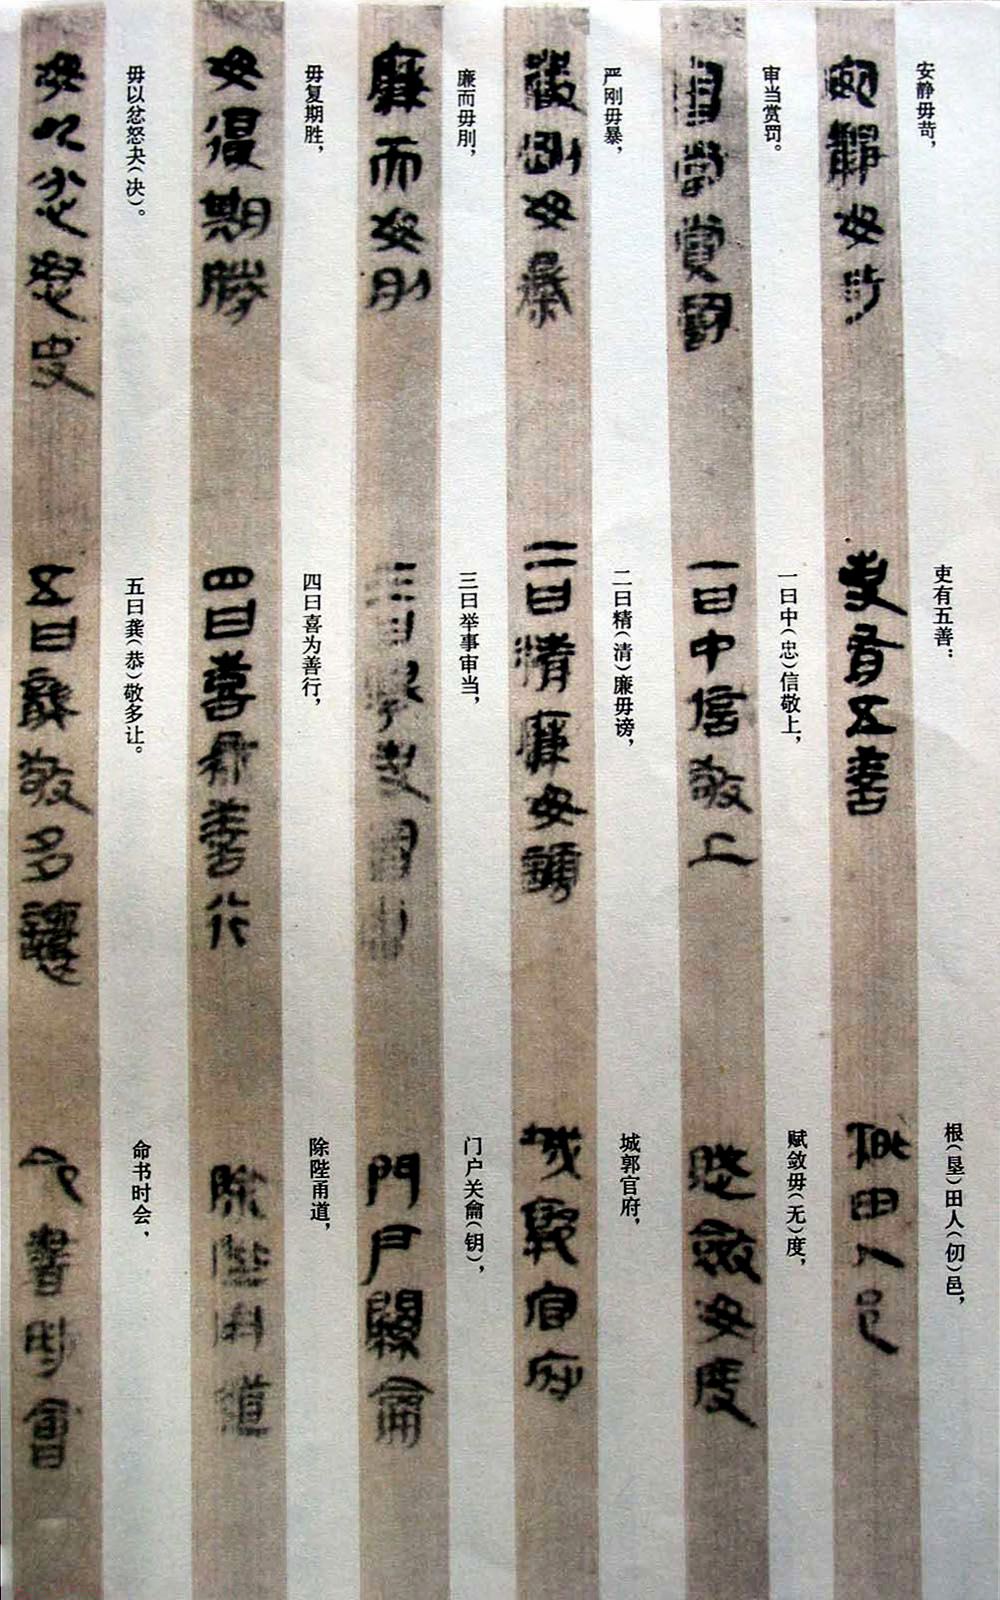 秦古隶《云梦睡虎地秦墓竹简》,两千多年前的文字墨迹